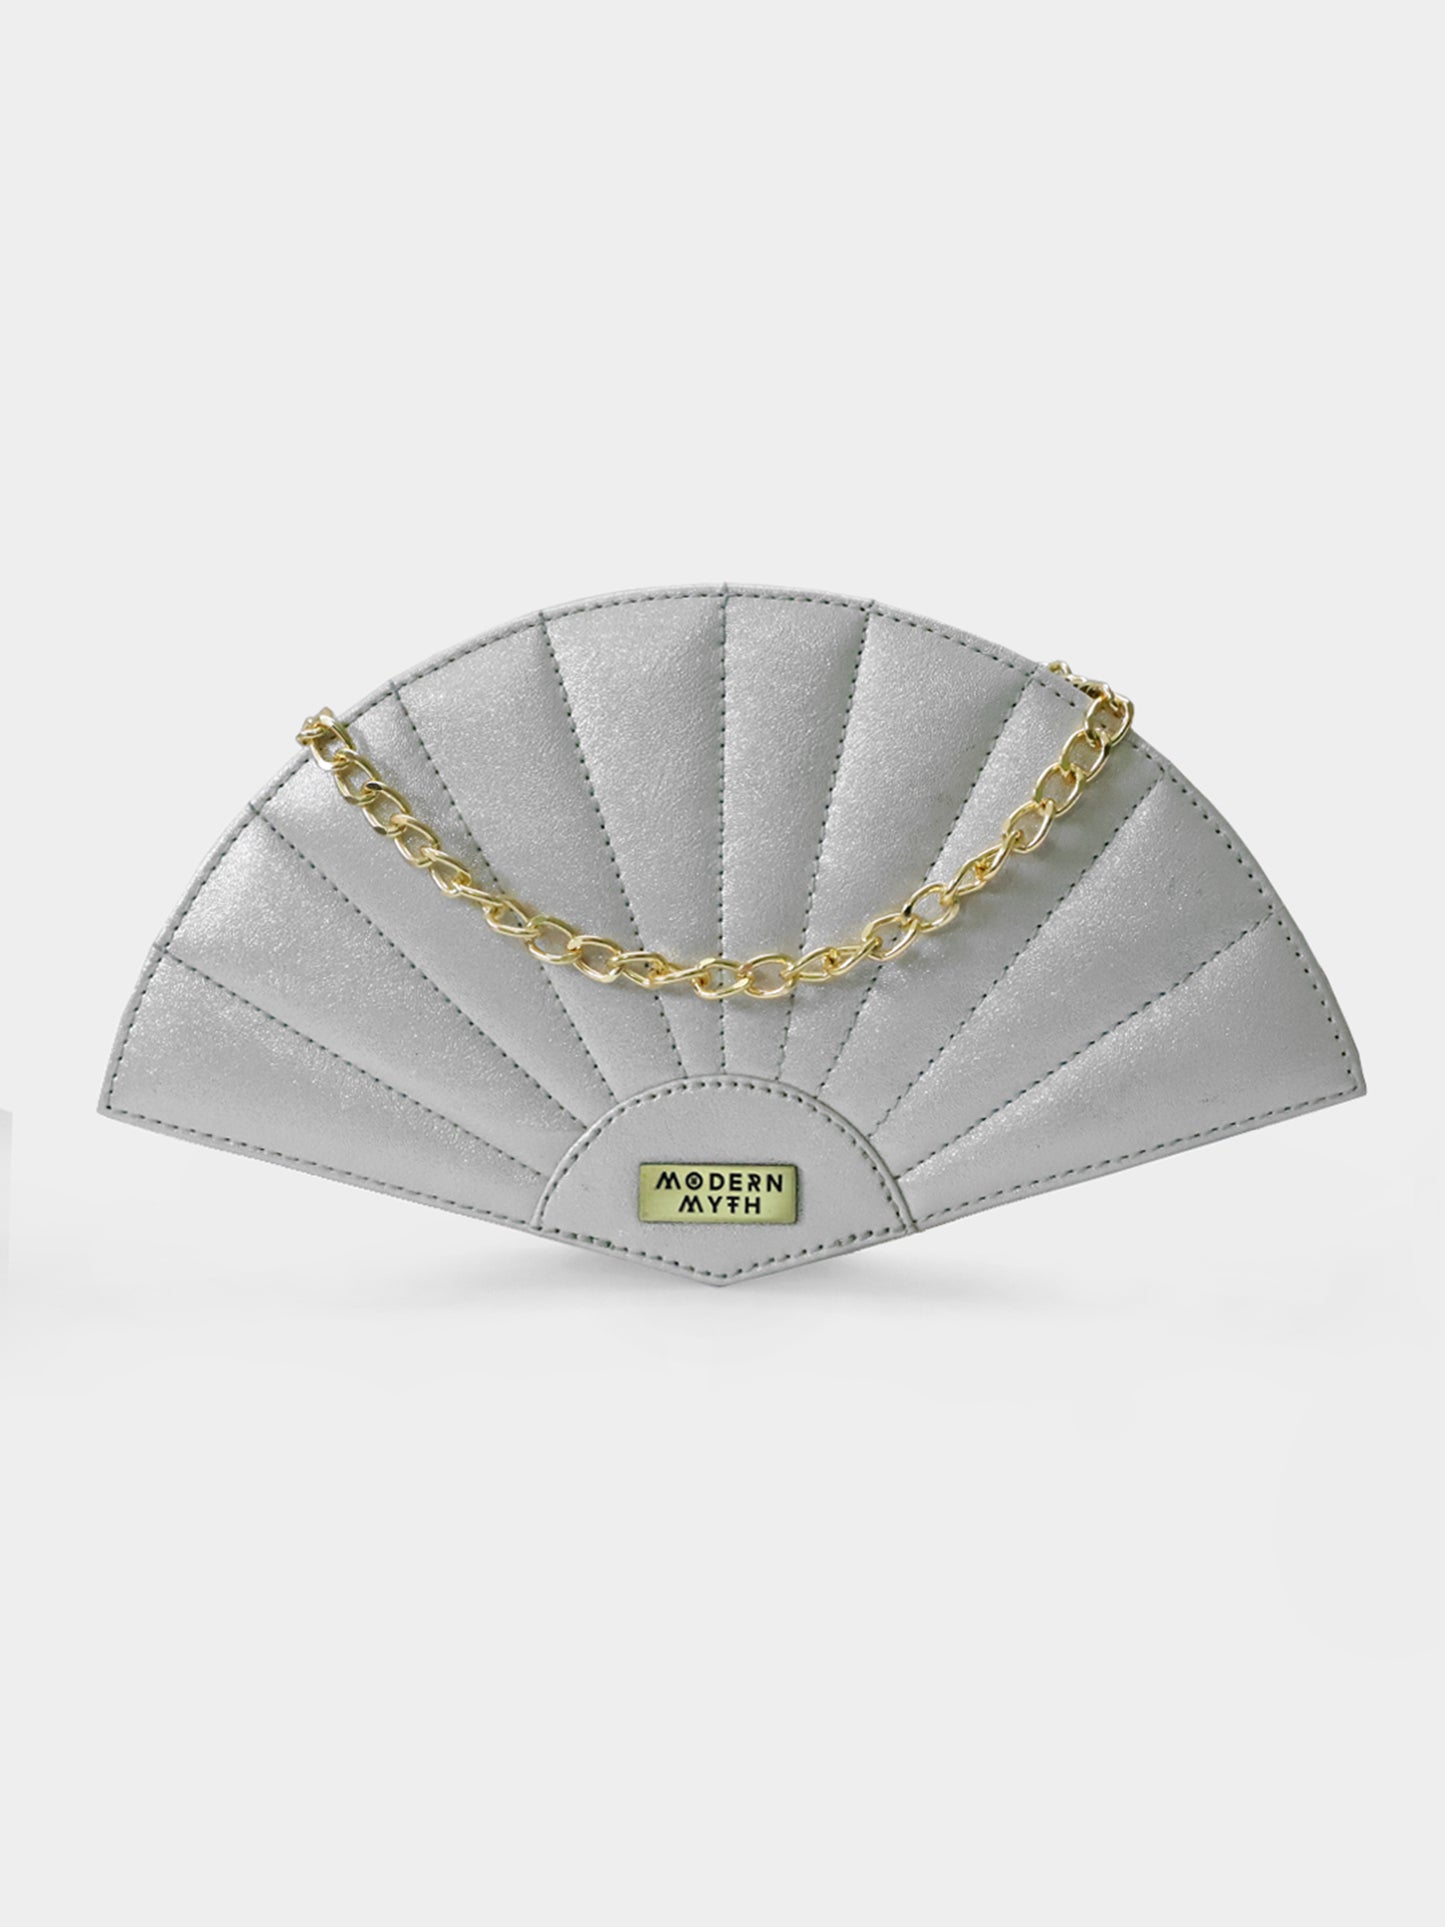 Pearl Silver Plain Fan Bag | Modern Myth